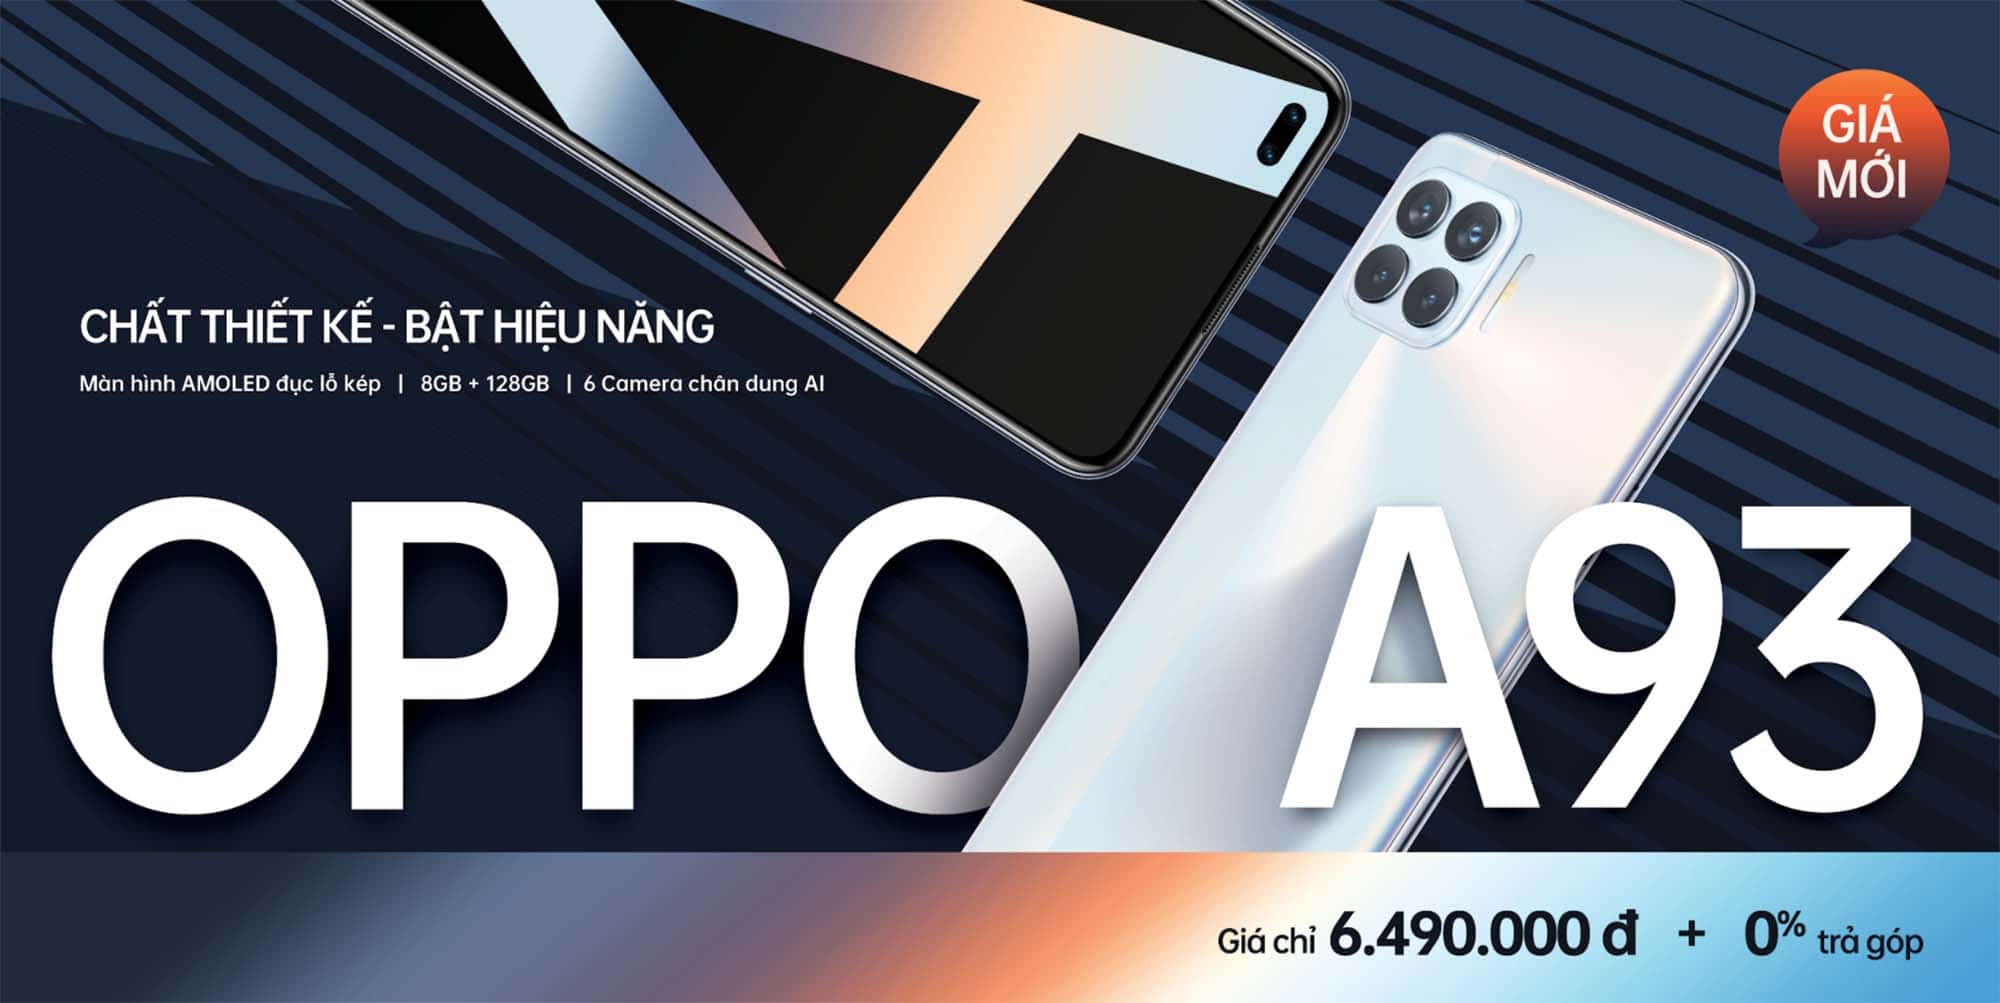 OPPO A93 công bố giá mới tri ân khách hàng nhân dịp Tết Tân Sửu